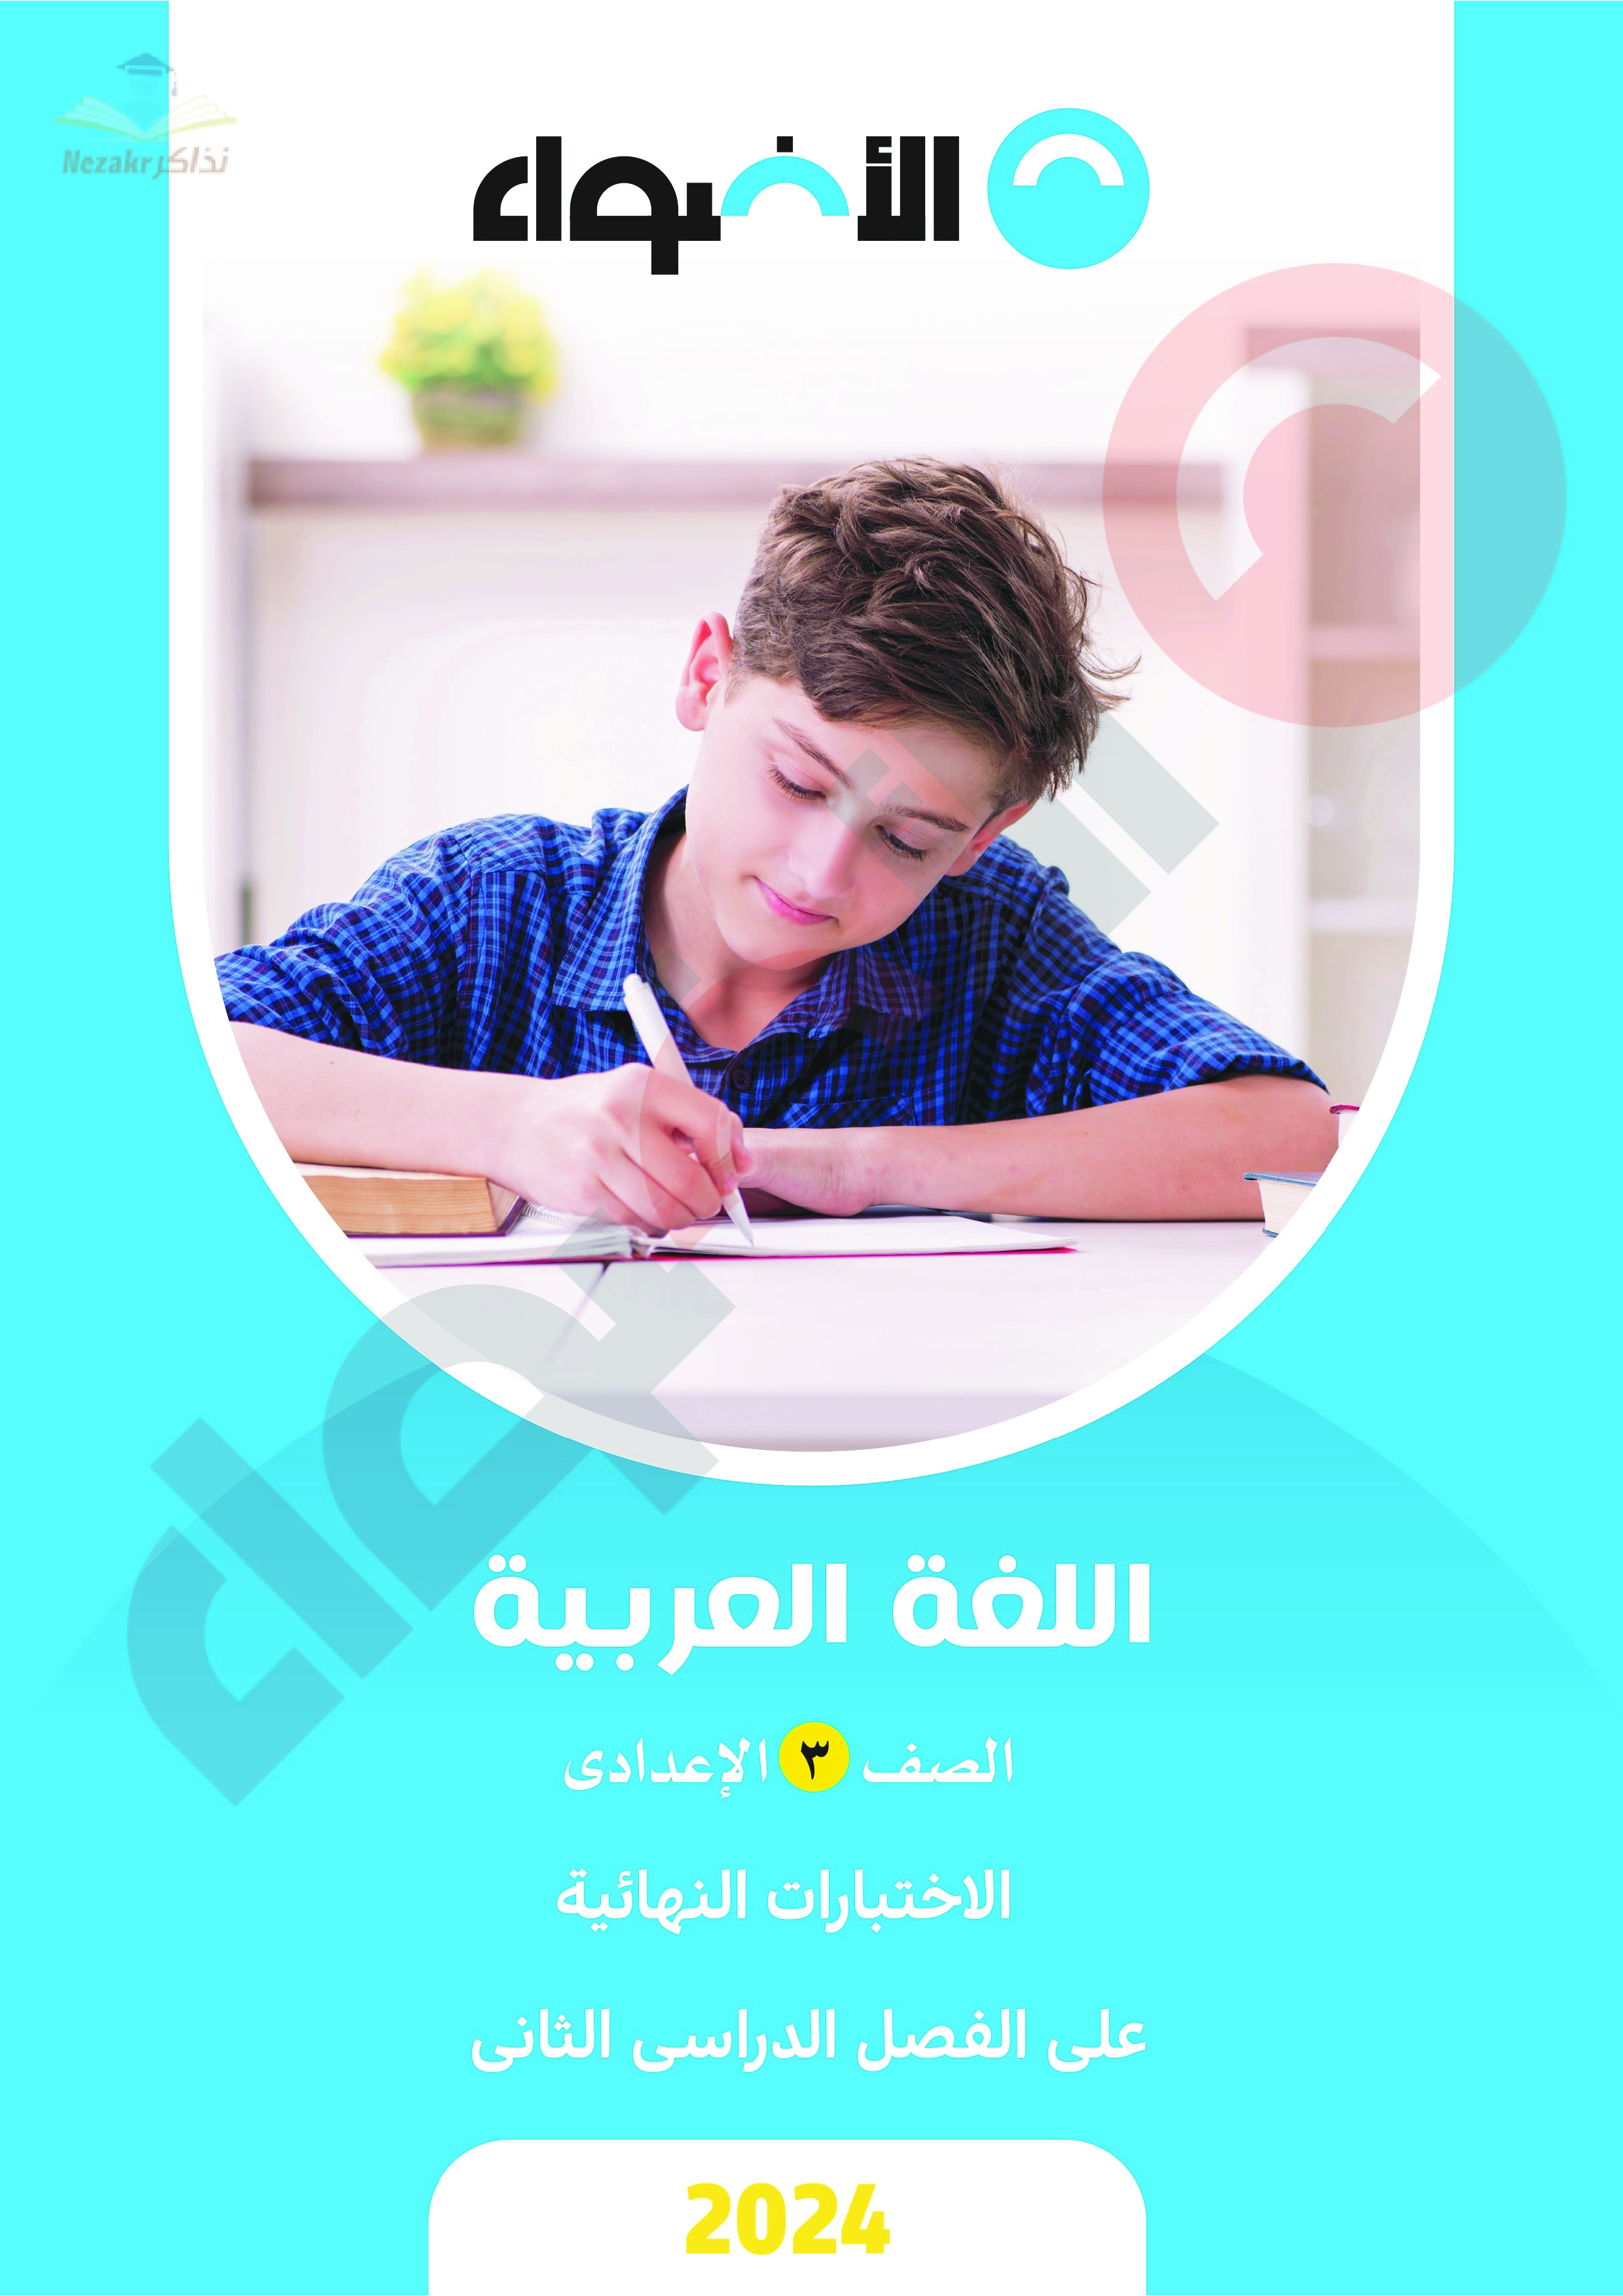 مراجعة الأضواء النهائية في اللغة العربية للصف الثالث الإعدادي الفصل الدراسي الثاني